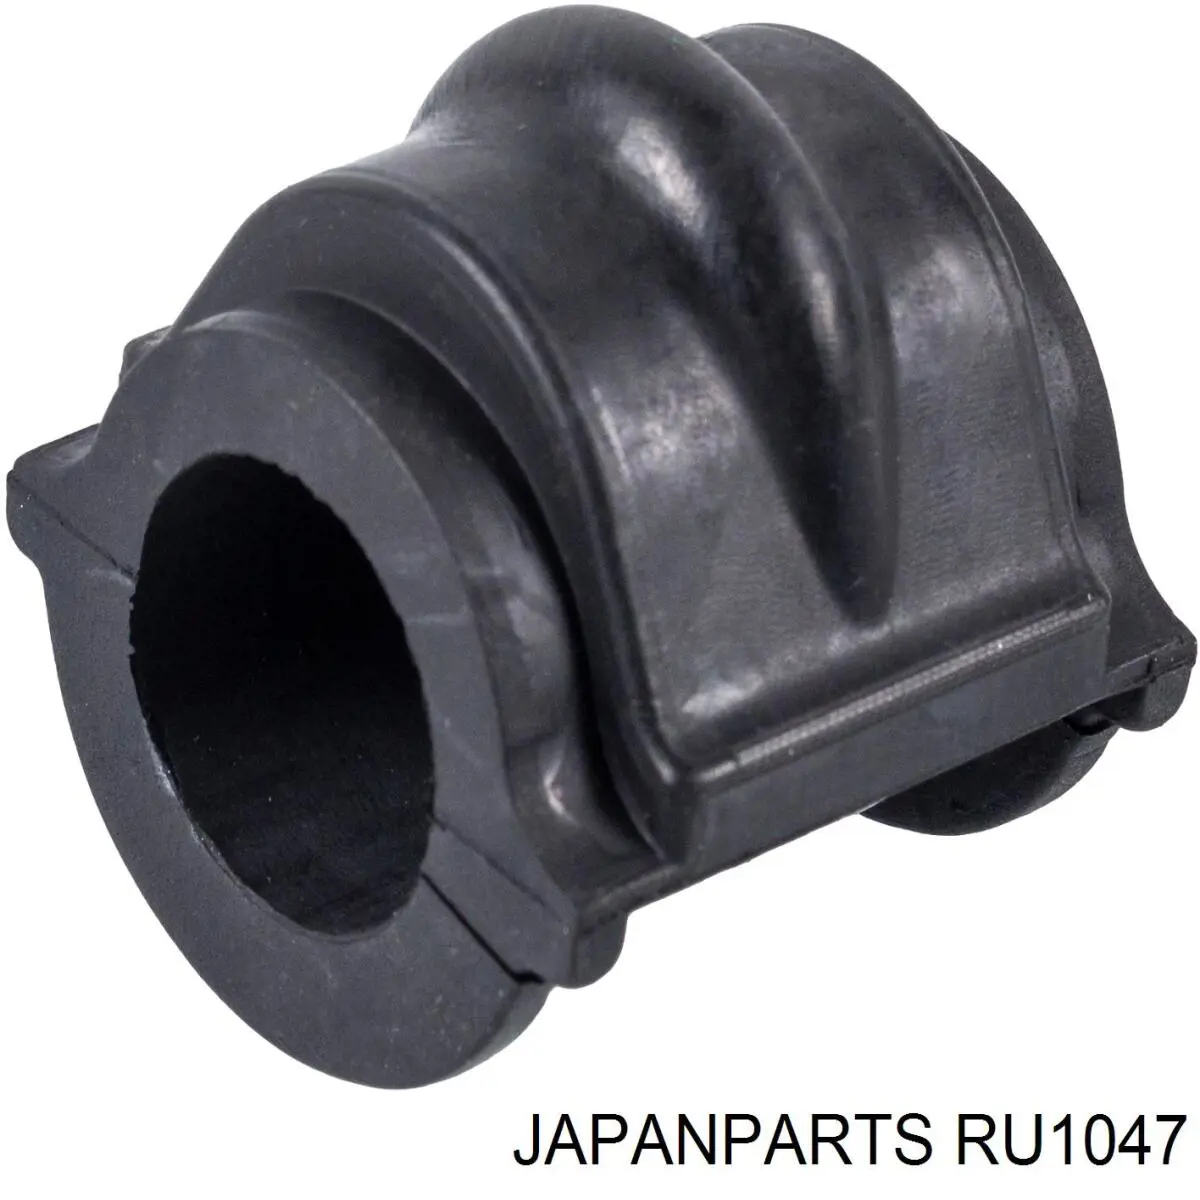 RU1047 Japan Parts casquillo de barra estabilizadora delantera